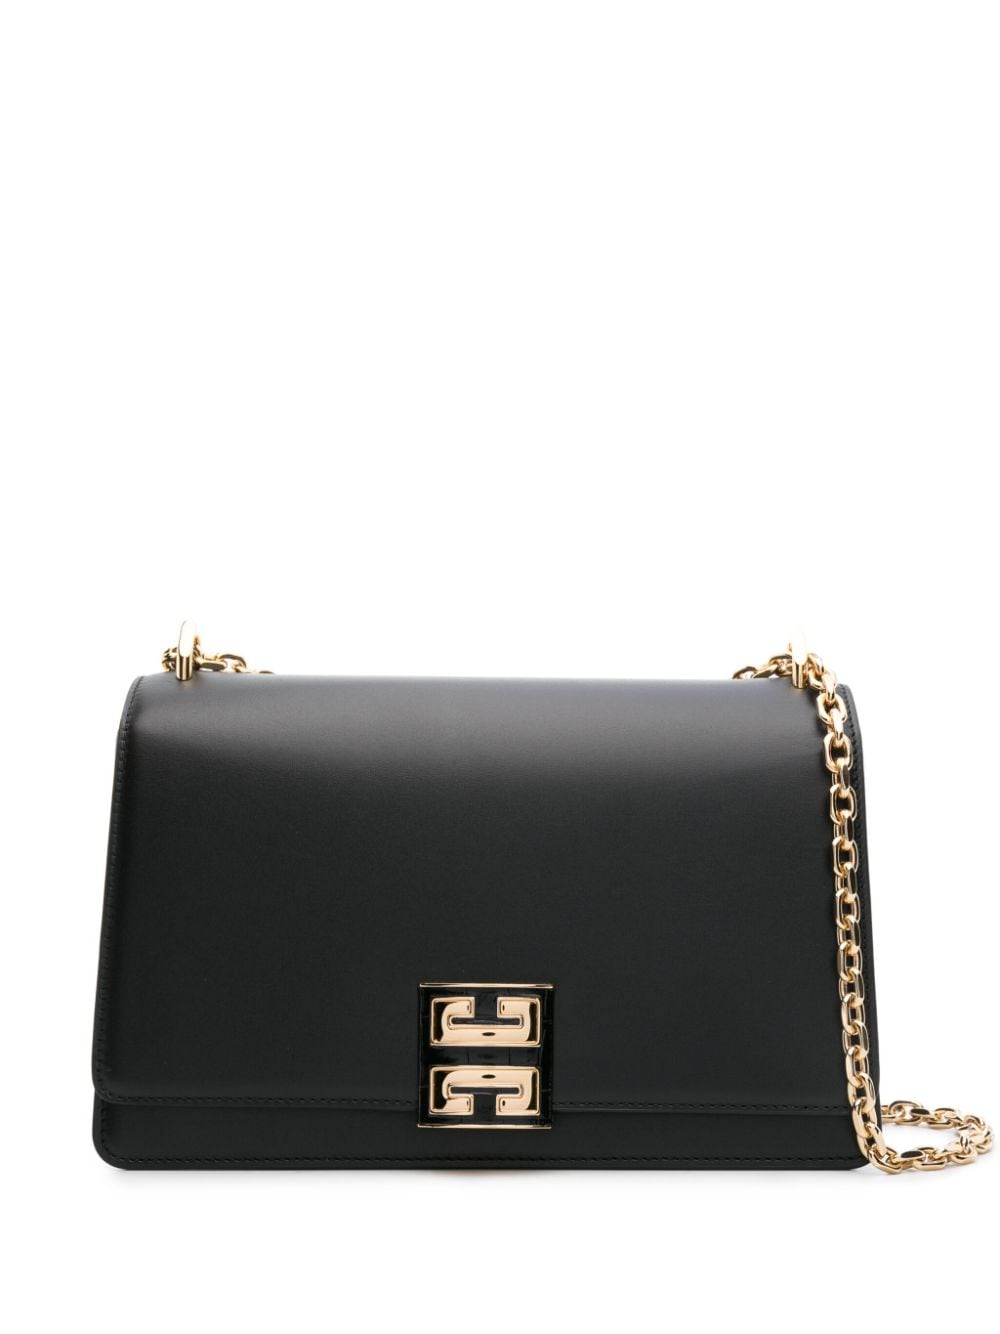 Image 1 of Givenchy medium 4G leather shoulder bag